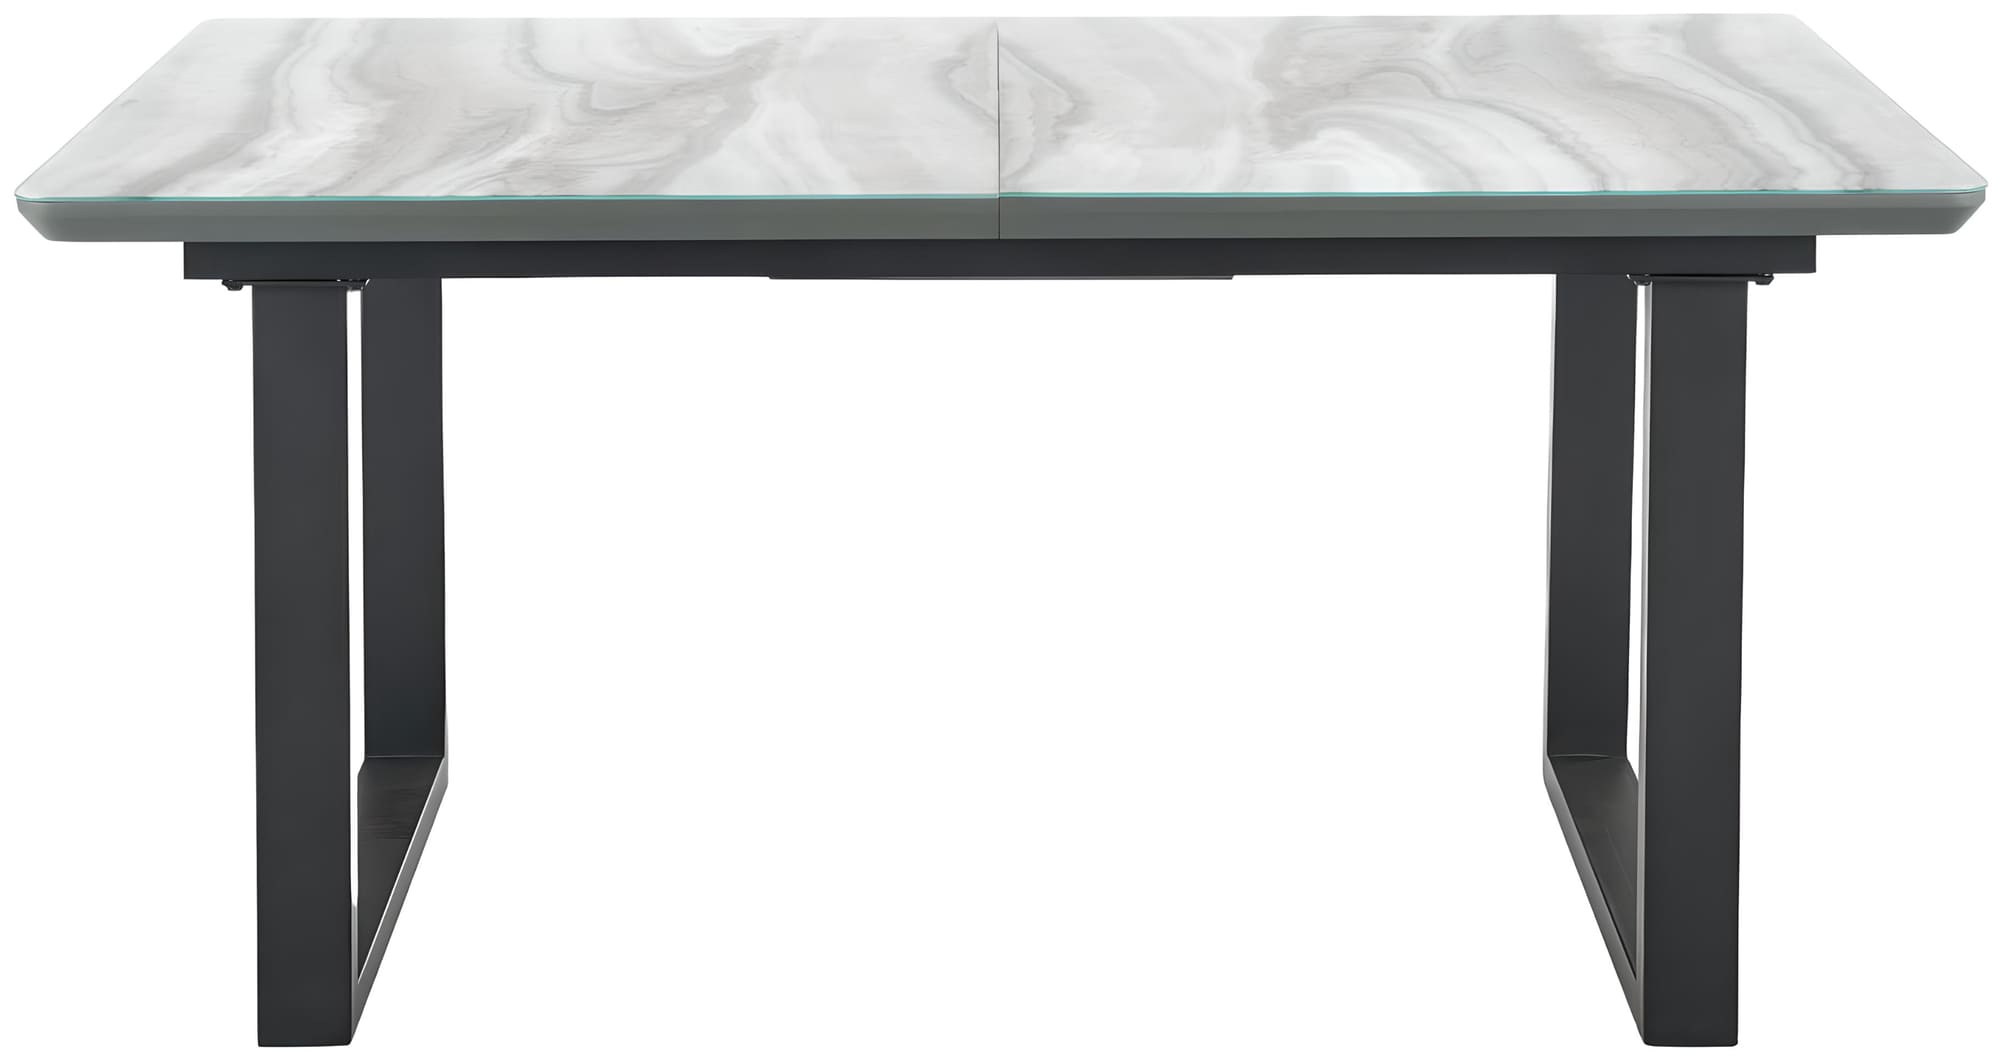 Table à manger extensible en verre aspect marbre gris et acier noir L160-200